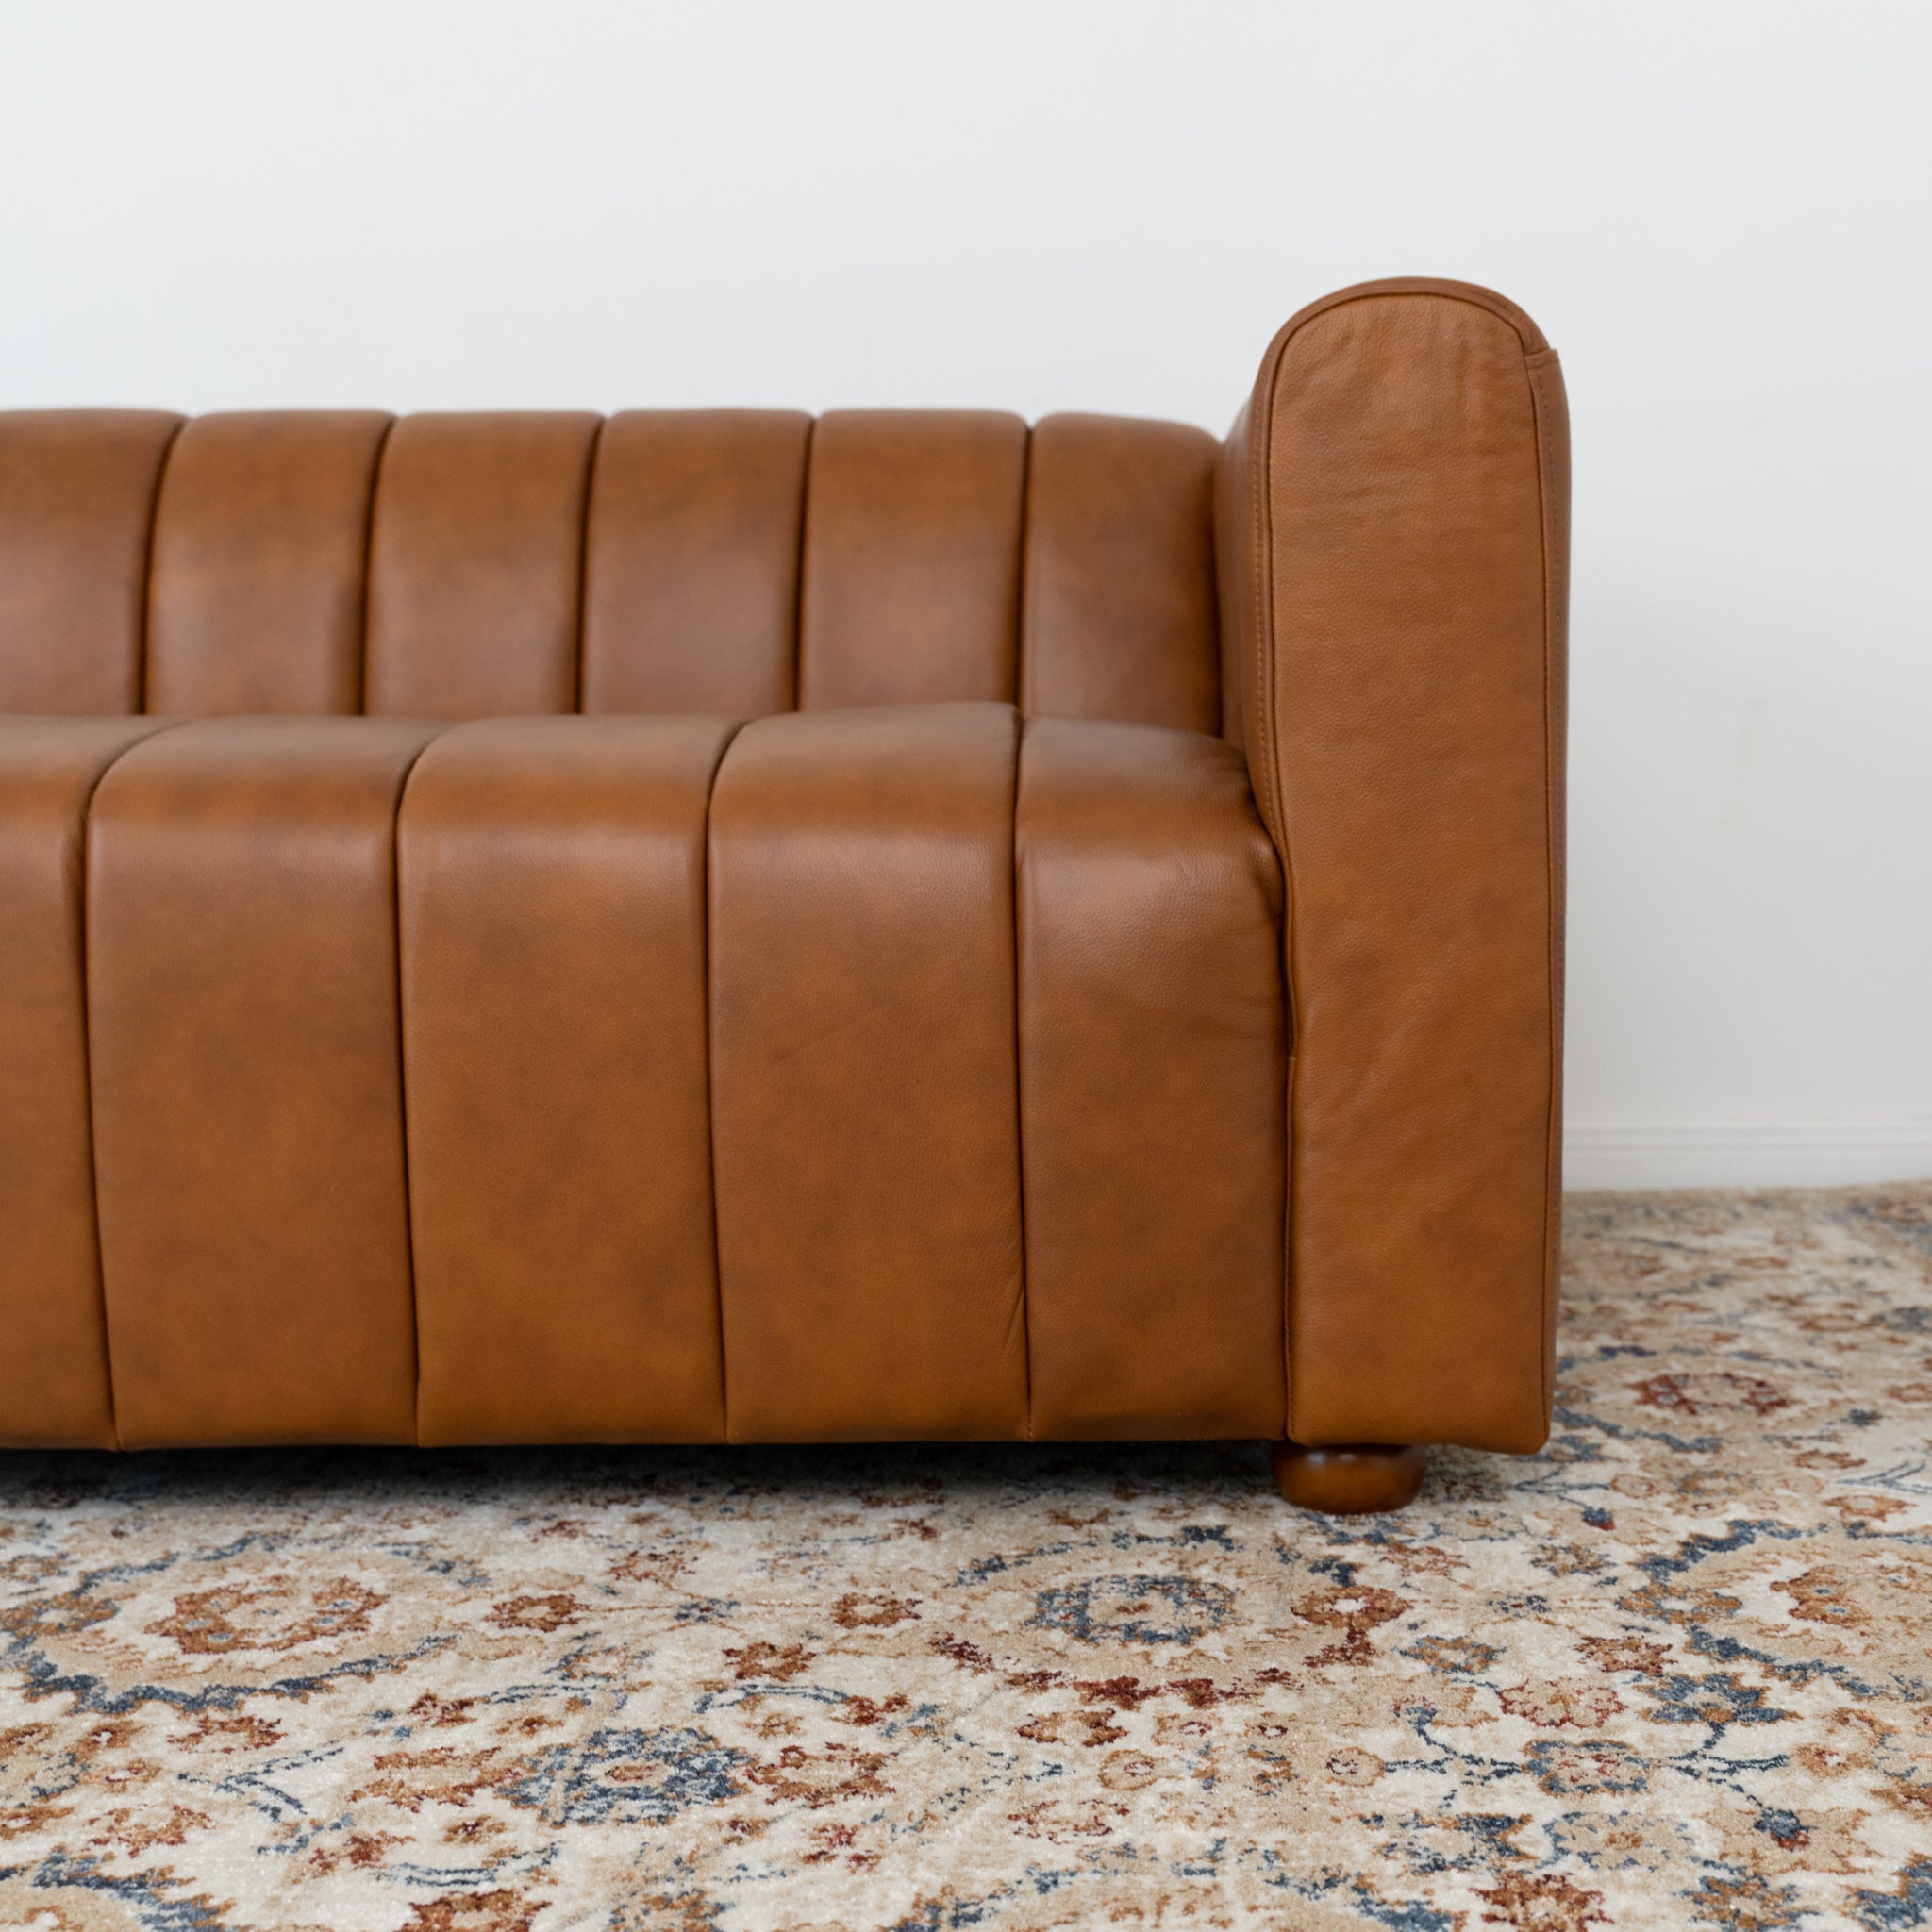 Clara Cognac Leather Sofa